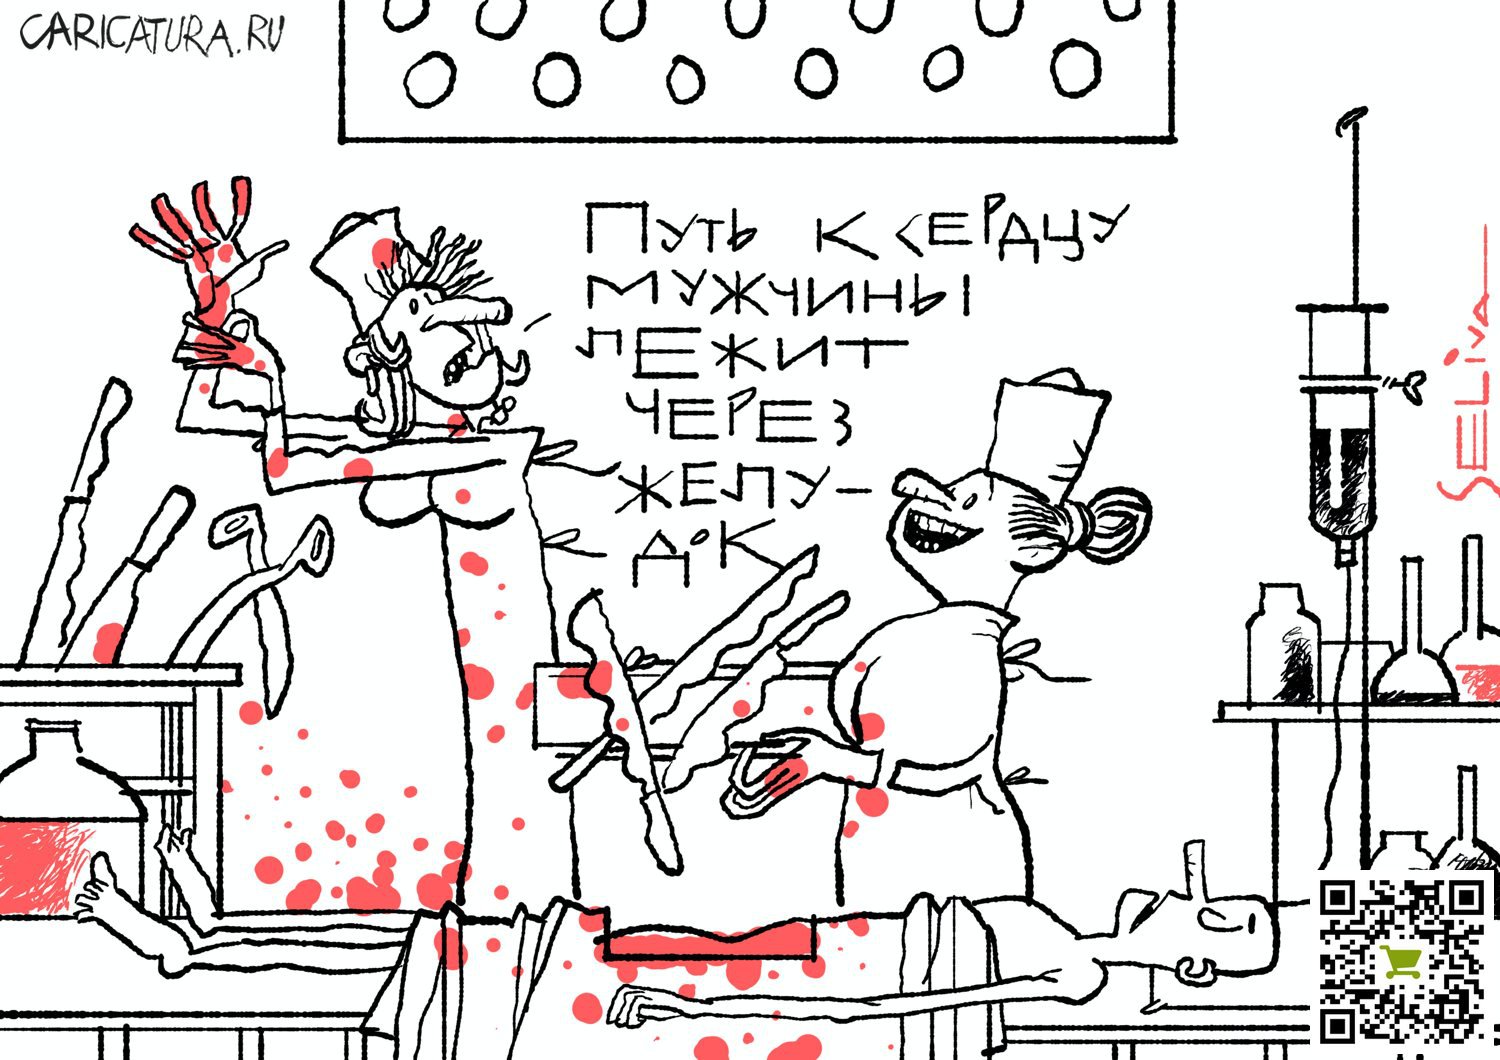 Карикатура "Все путем", Андрей Селиванов